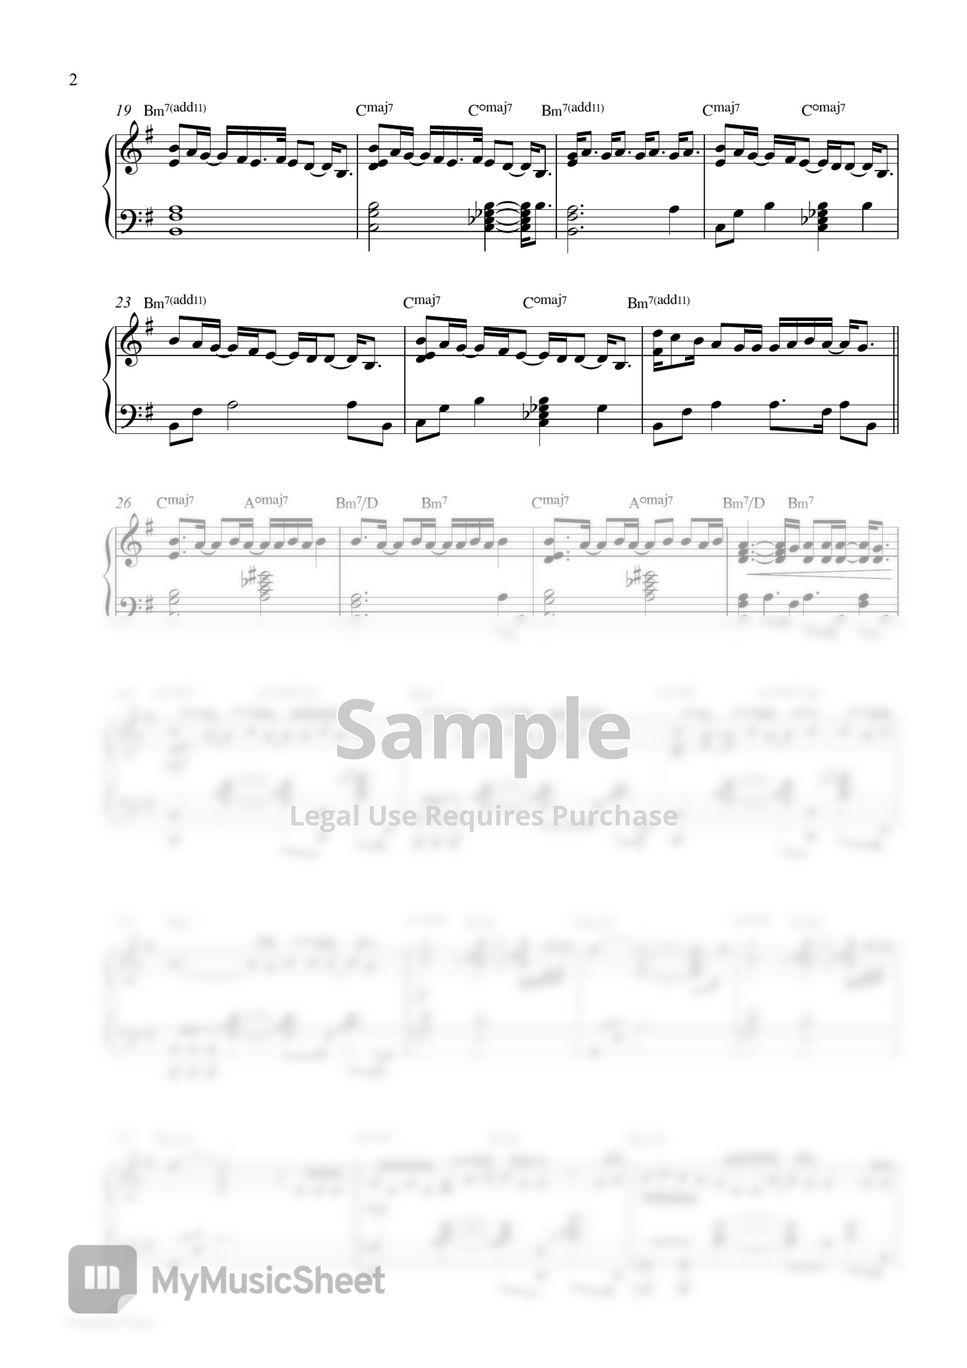 V - Rainy Days (Piano Sheet) by Pianella Piano